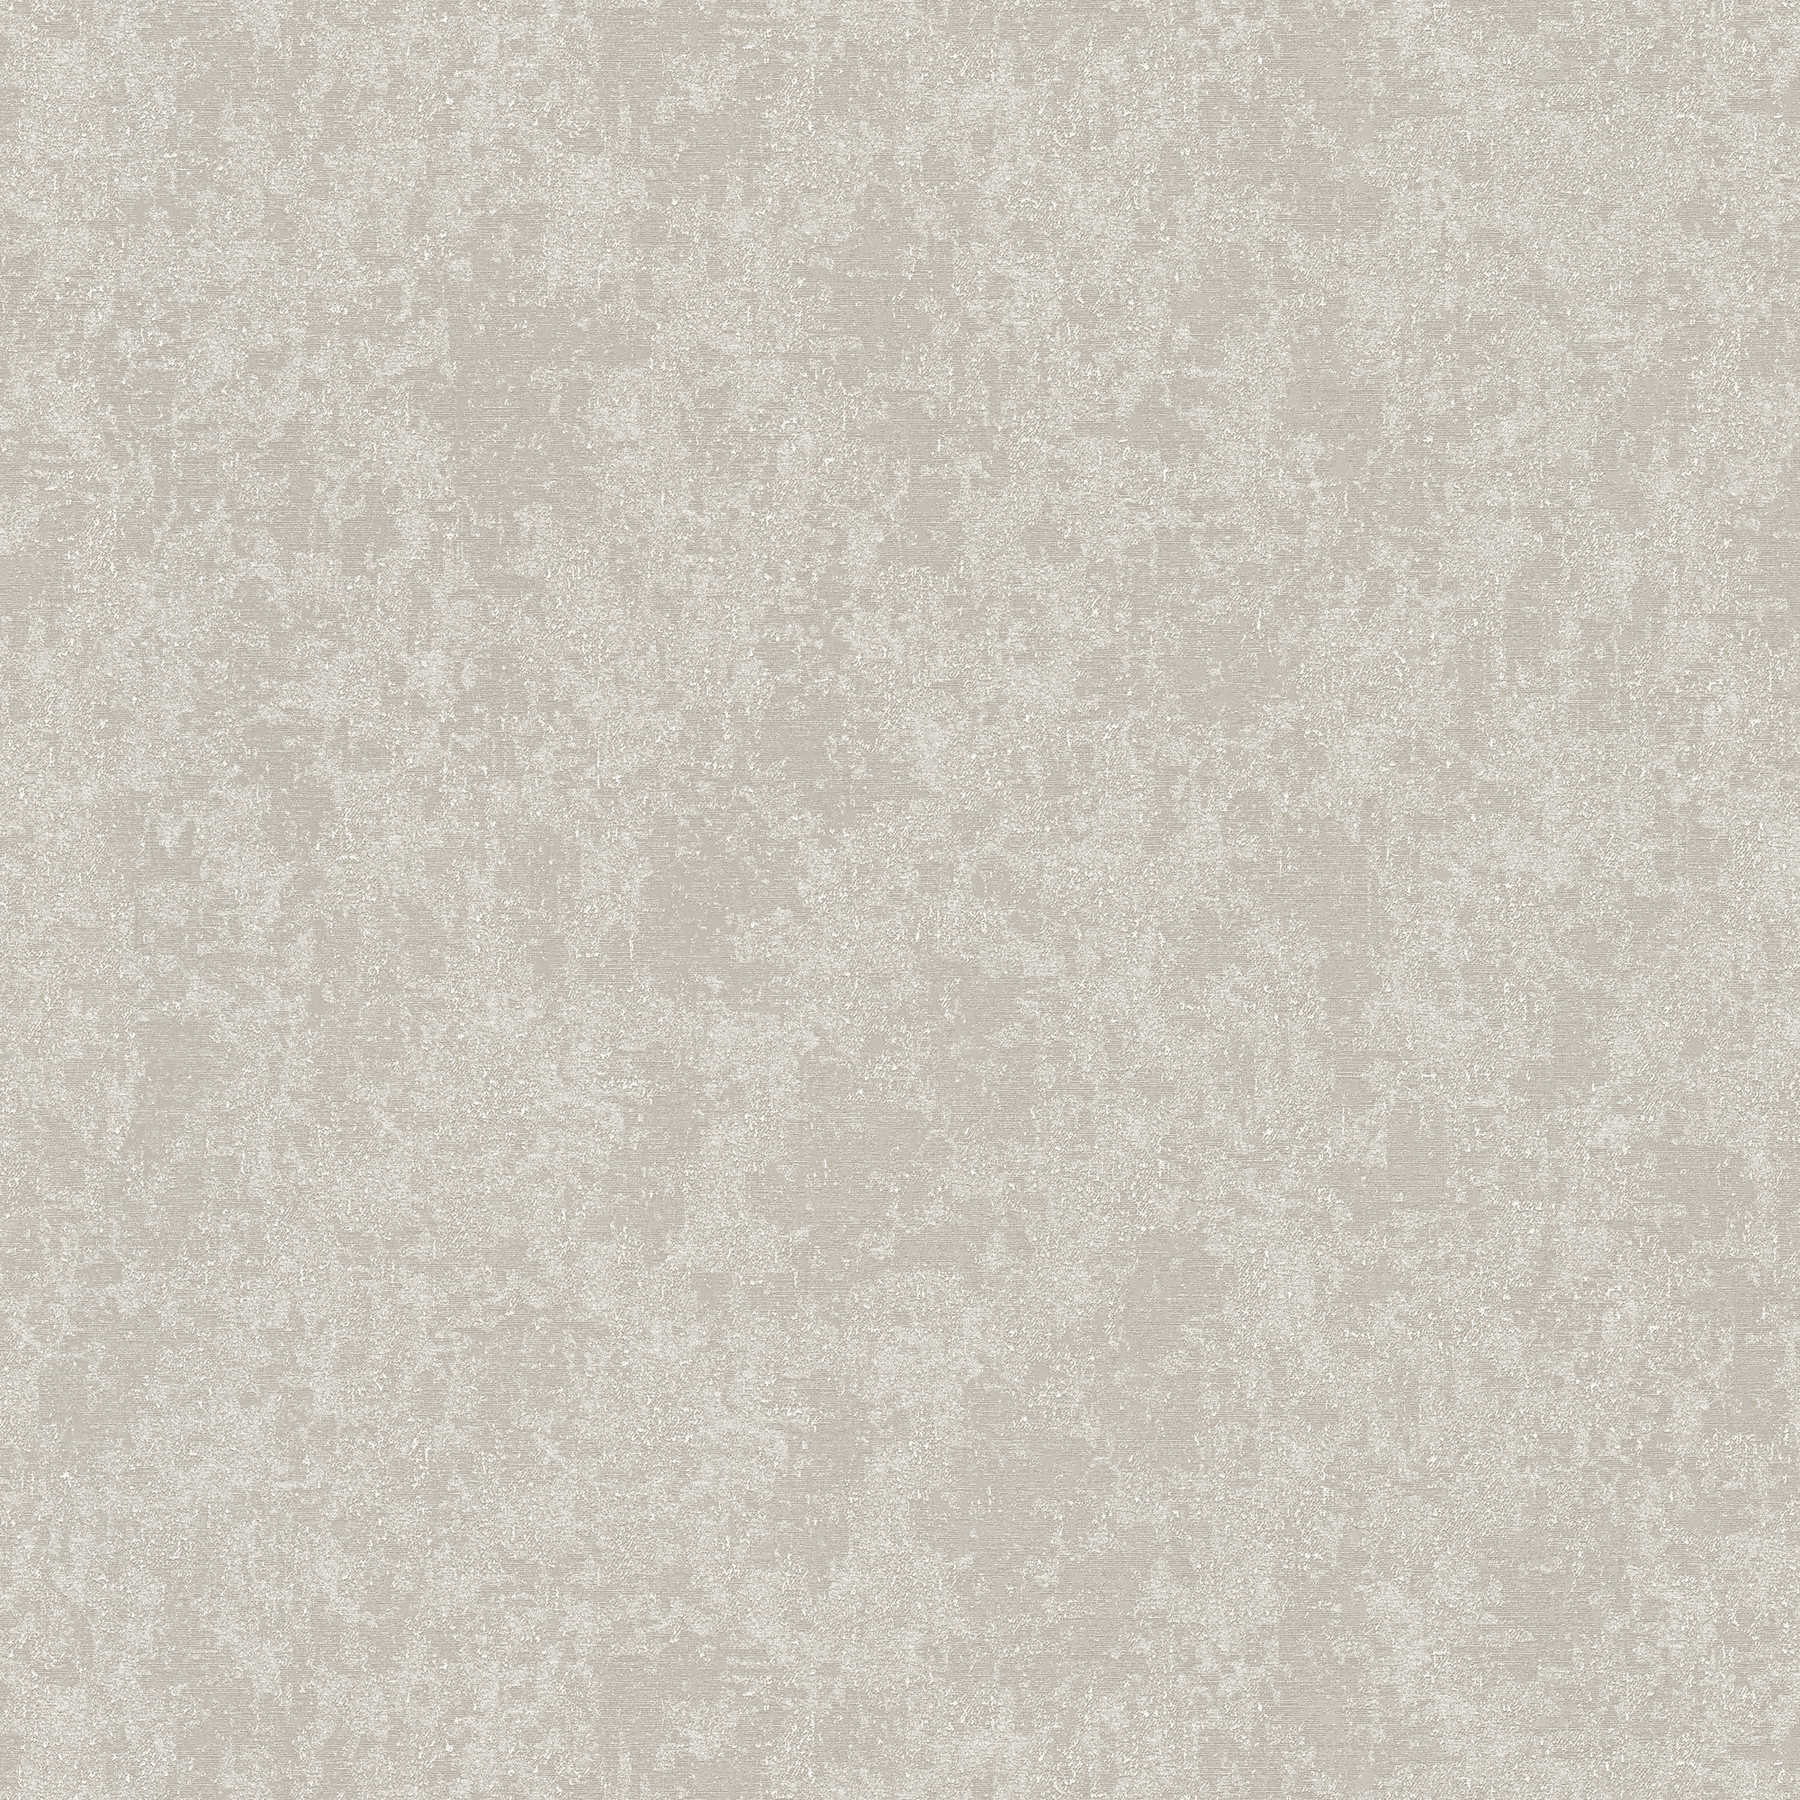 Papel pintado VERSACE gris claro no tejido con aspecto de yeso
